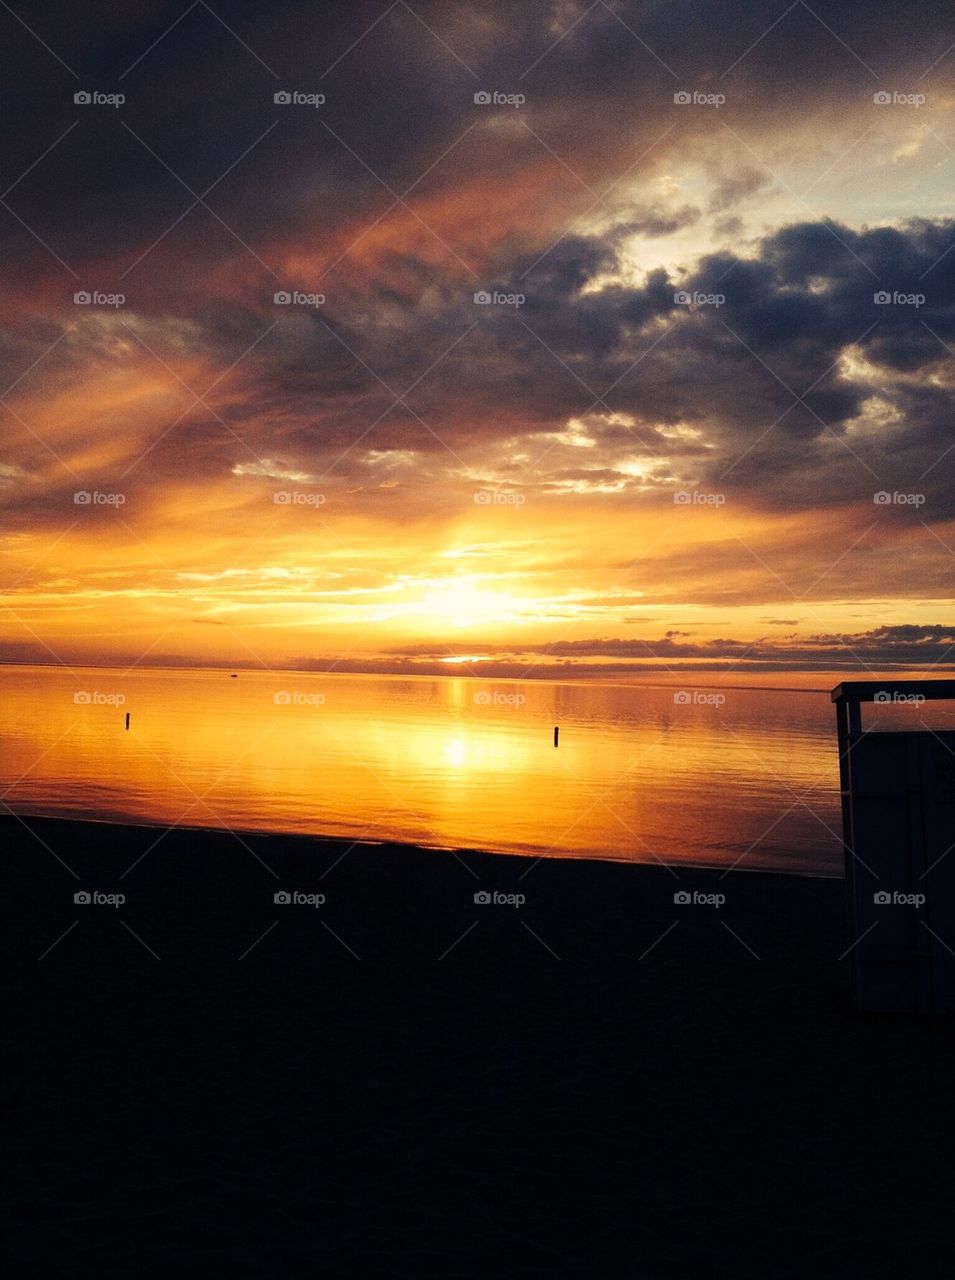 Sunset on Lake Michigan